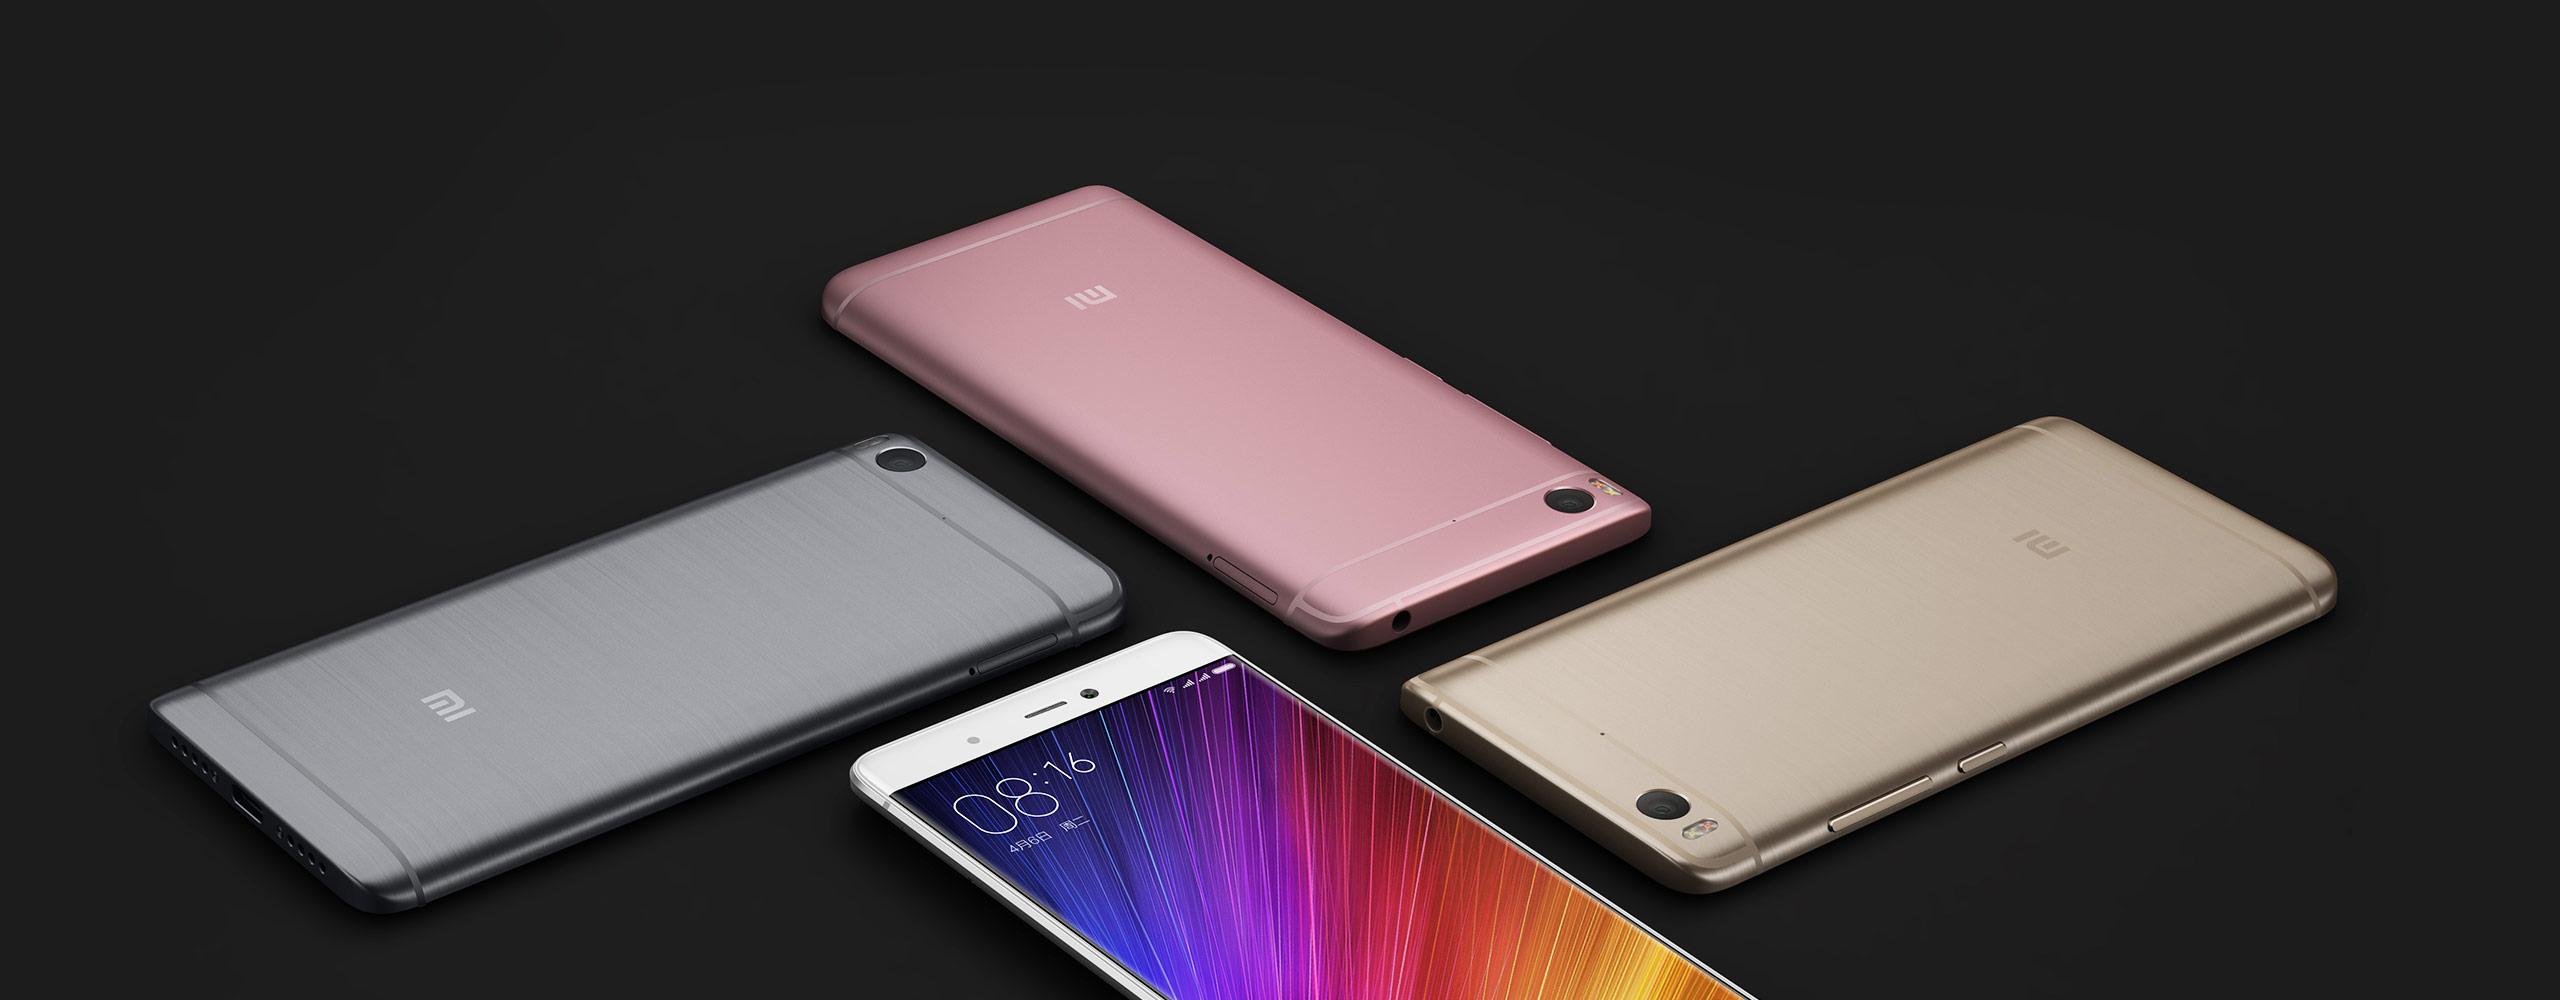 Xiaomi Mi 5s blanco, rosa, dorado y gris